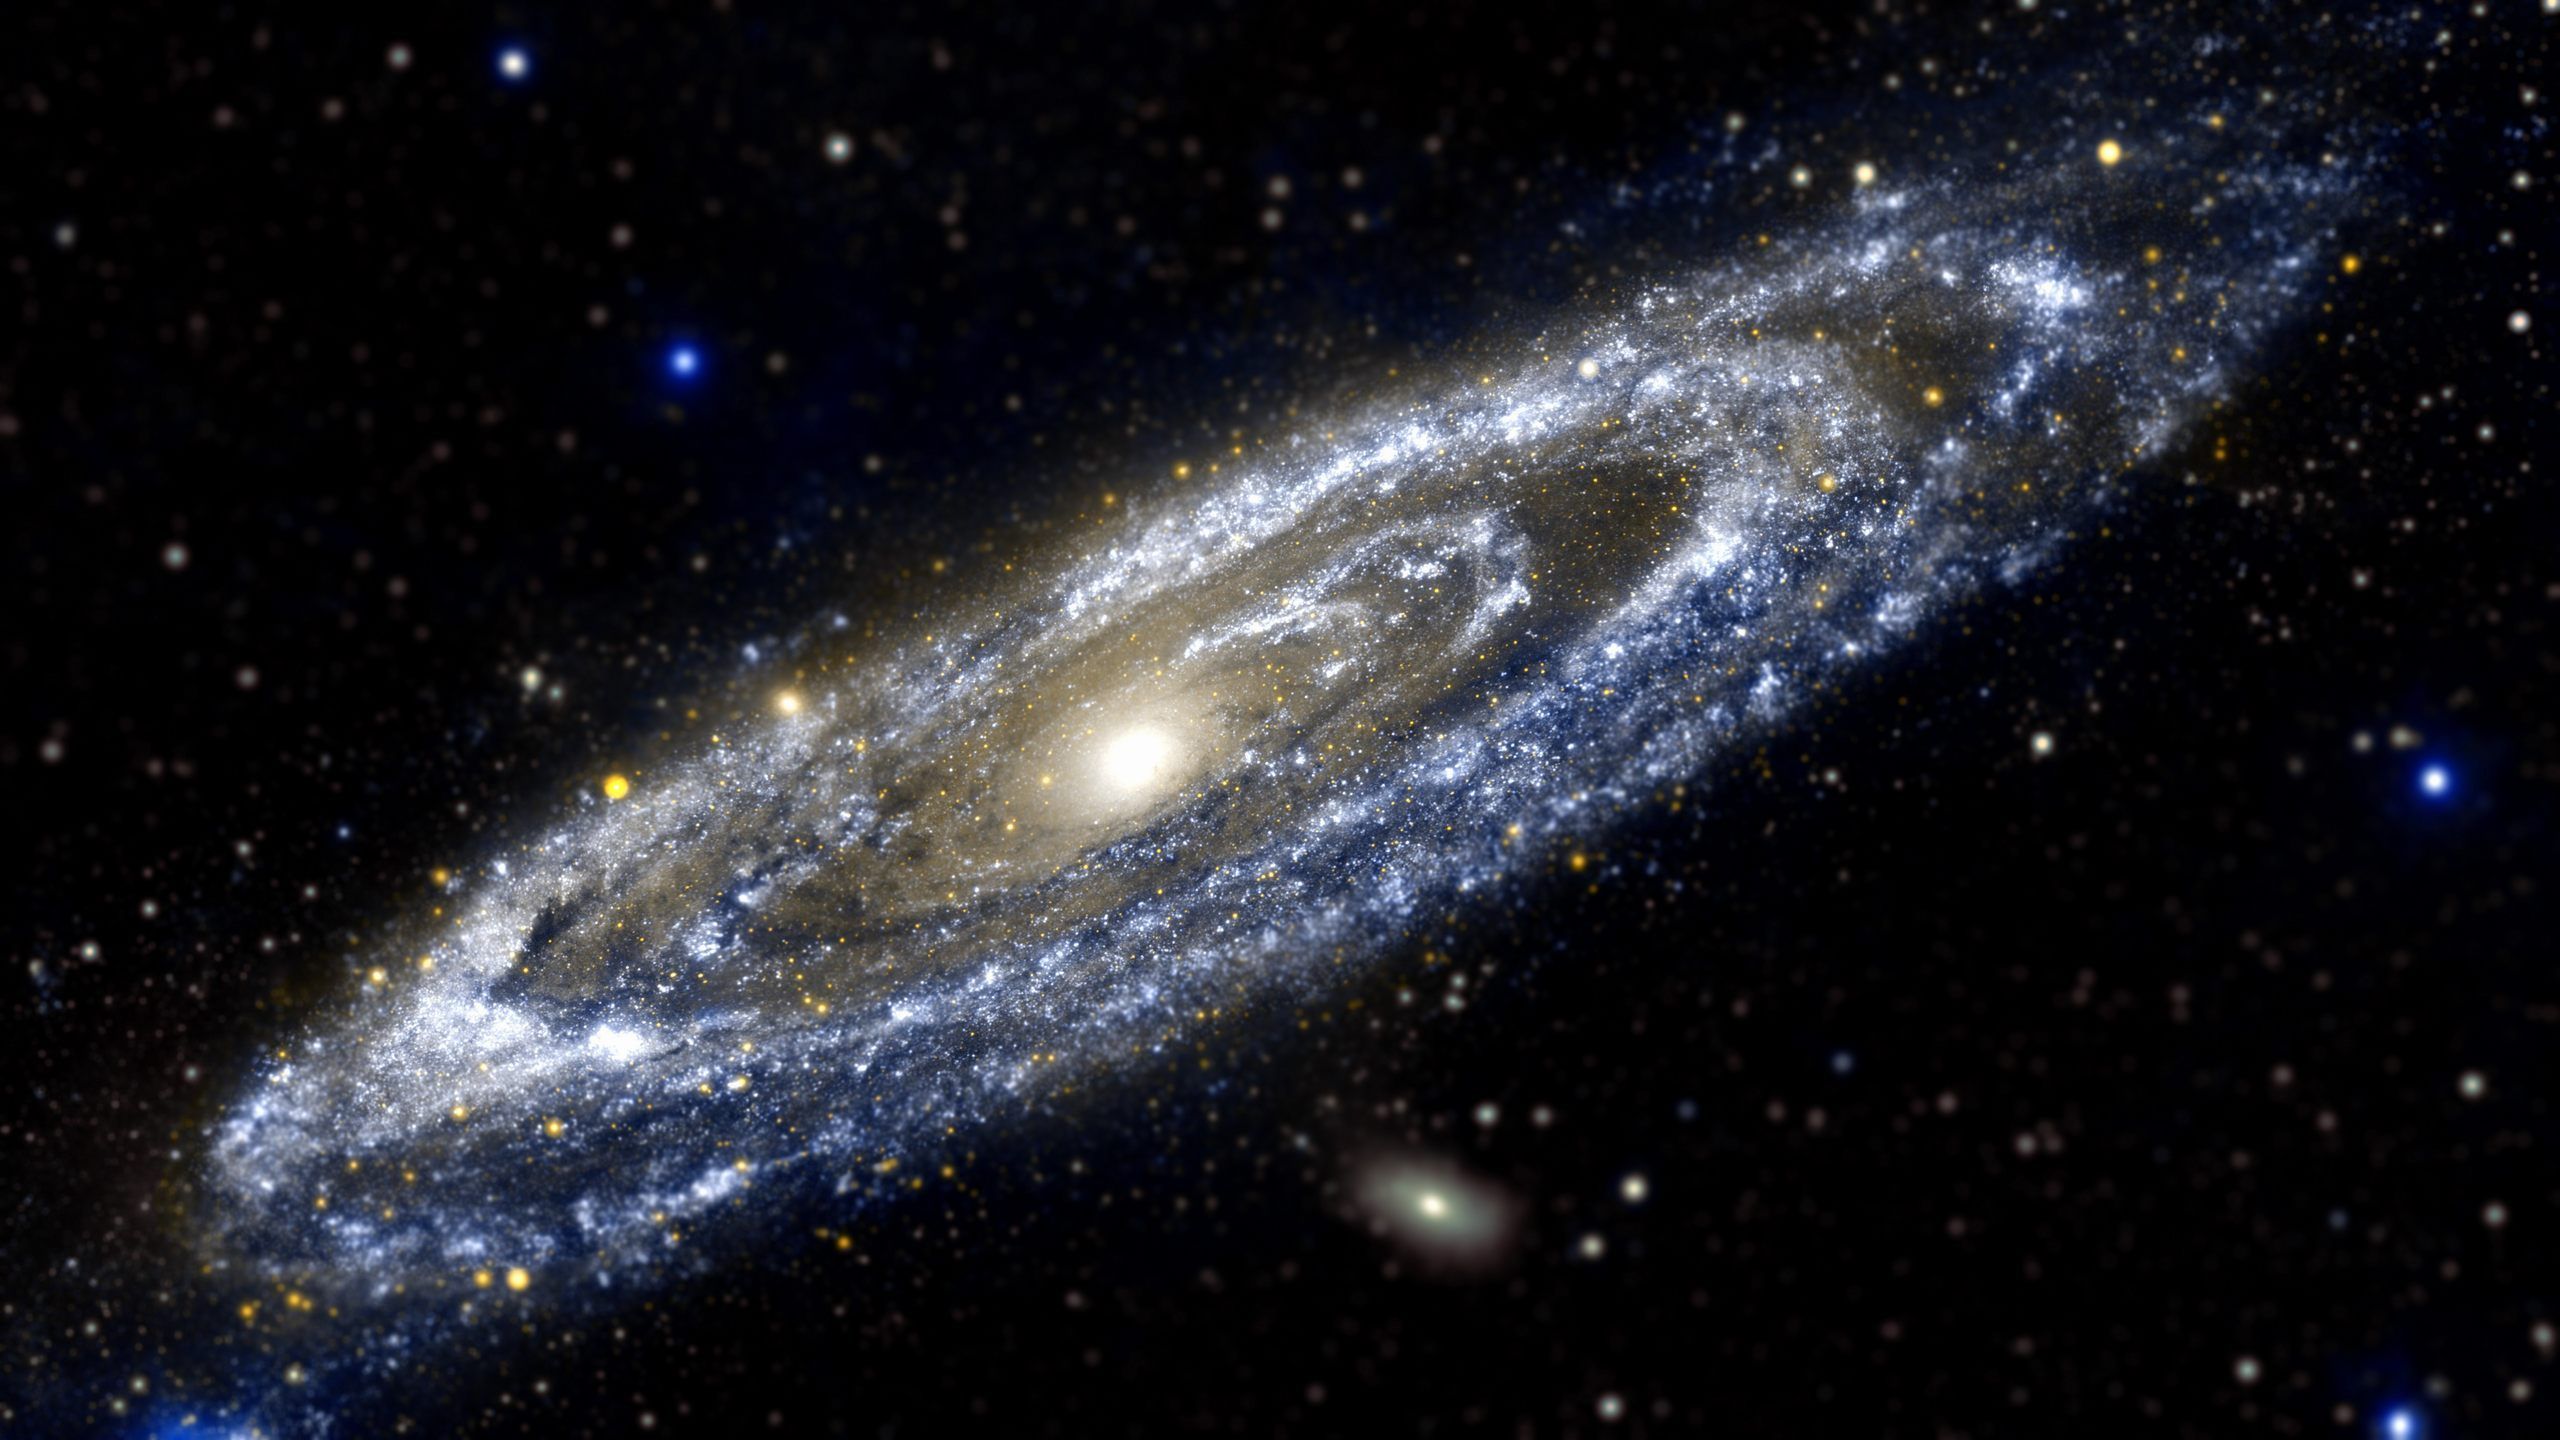 Parallel Universe Wallpaper, 100% Quality Parallel Universe HD. Galaxy wallpaper, Milky way galaxy, Andromeda galaxy